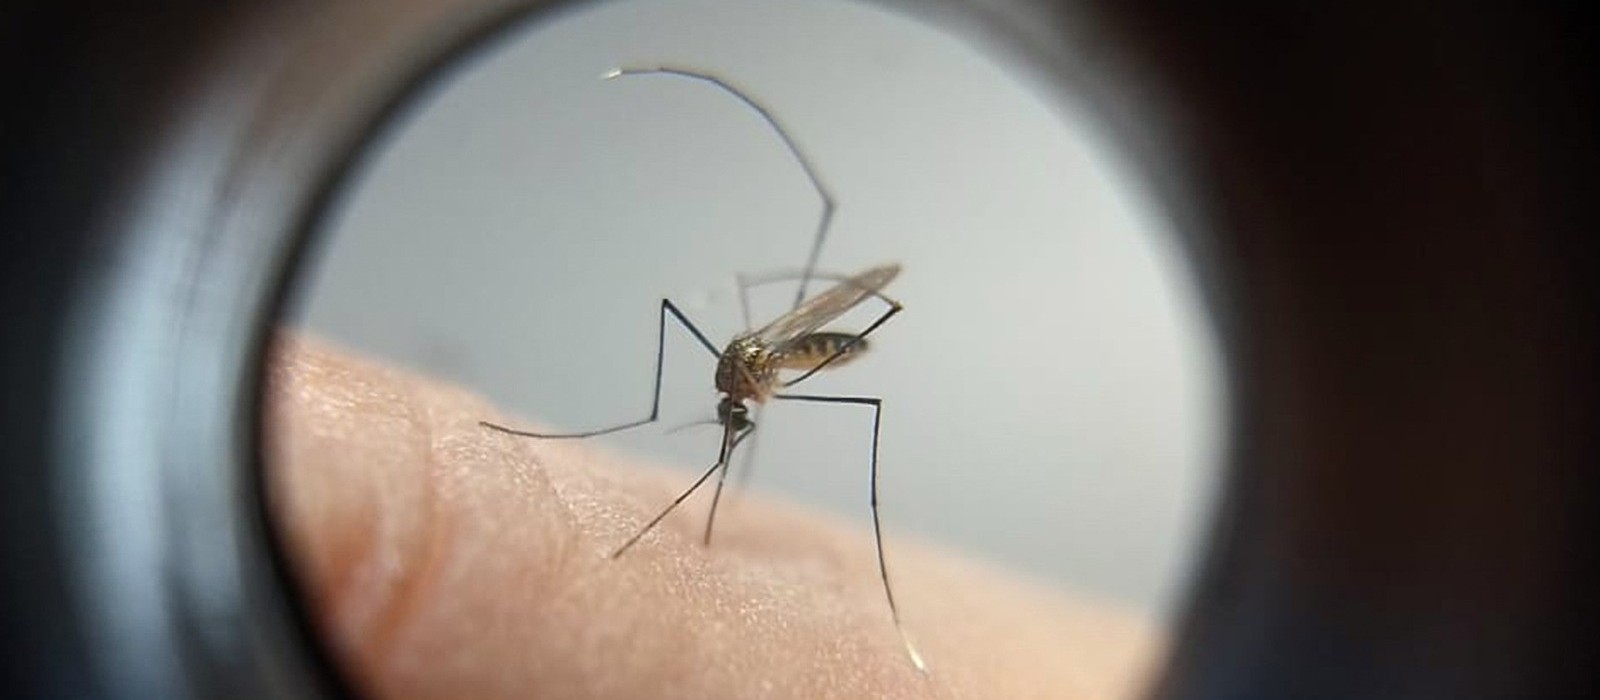 Maringá soma 3 mortes por dengue e chega a 10,5 mil casos, aponta Sesa